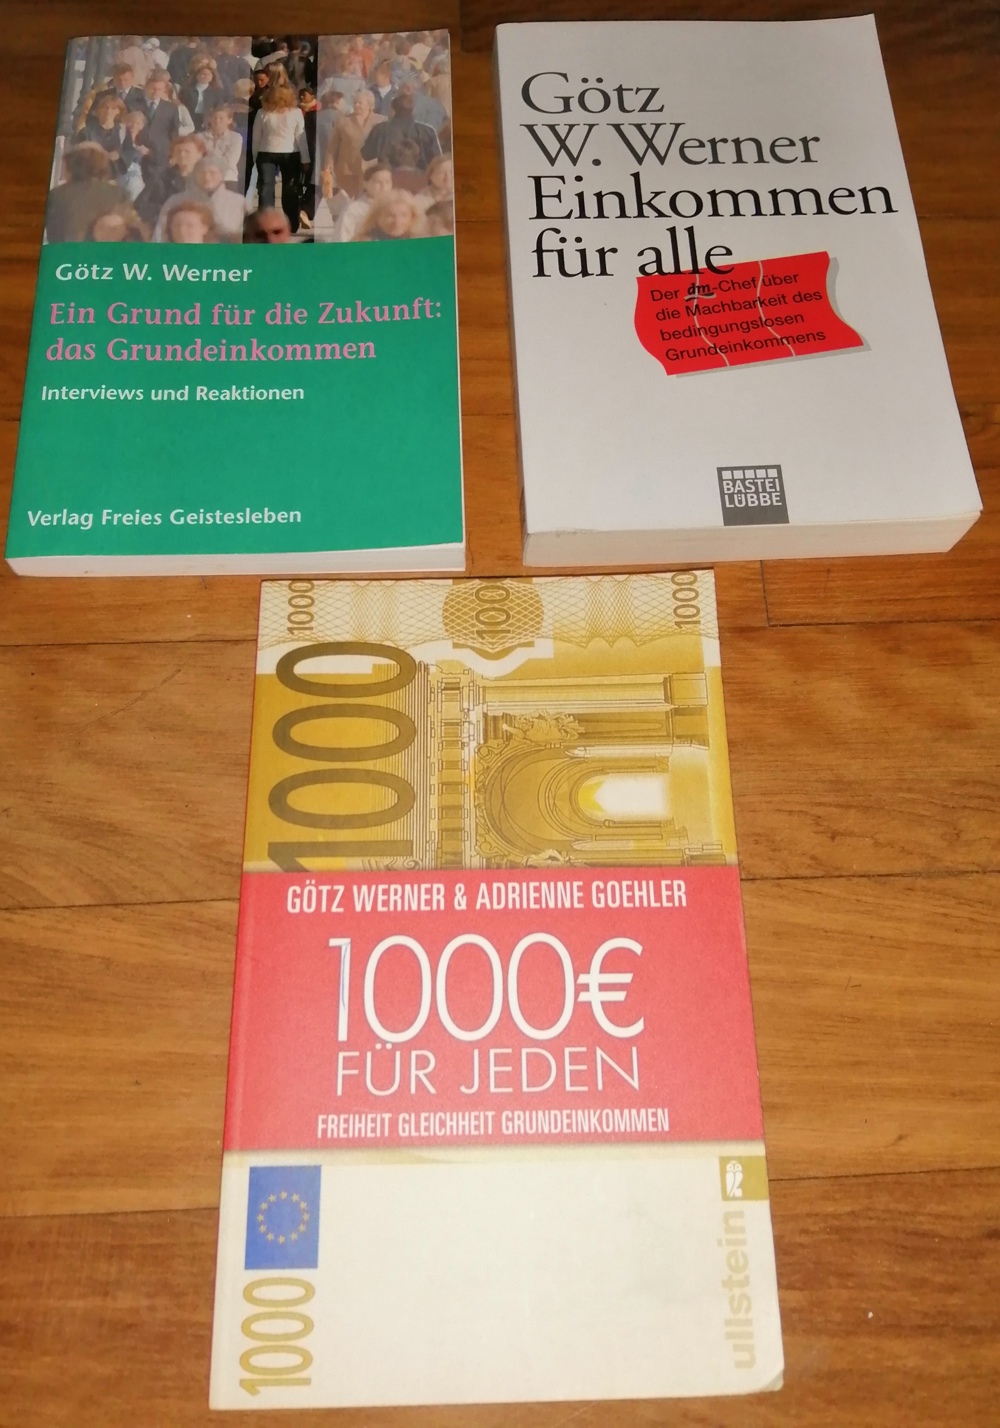 1 bis 3 Götz W. Werner, 1000 Euro für jeden, Einkommen für alle